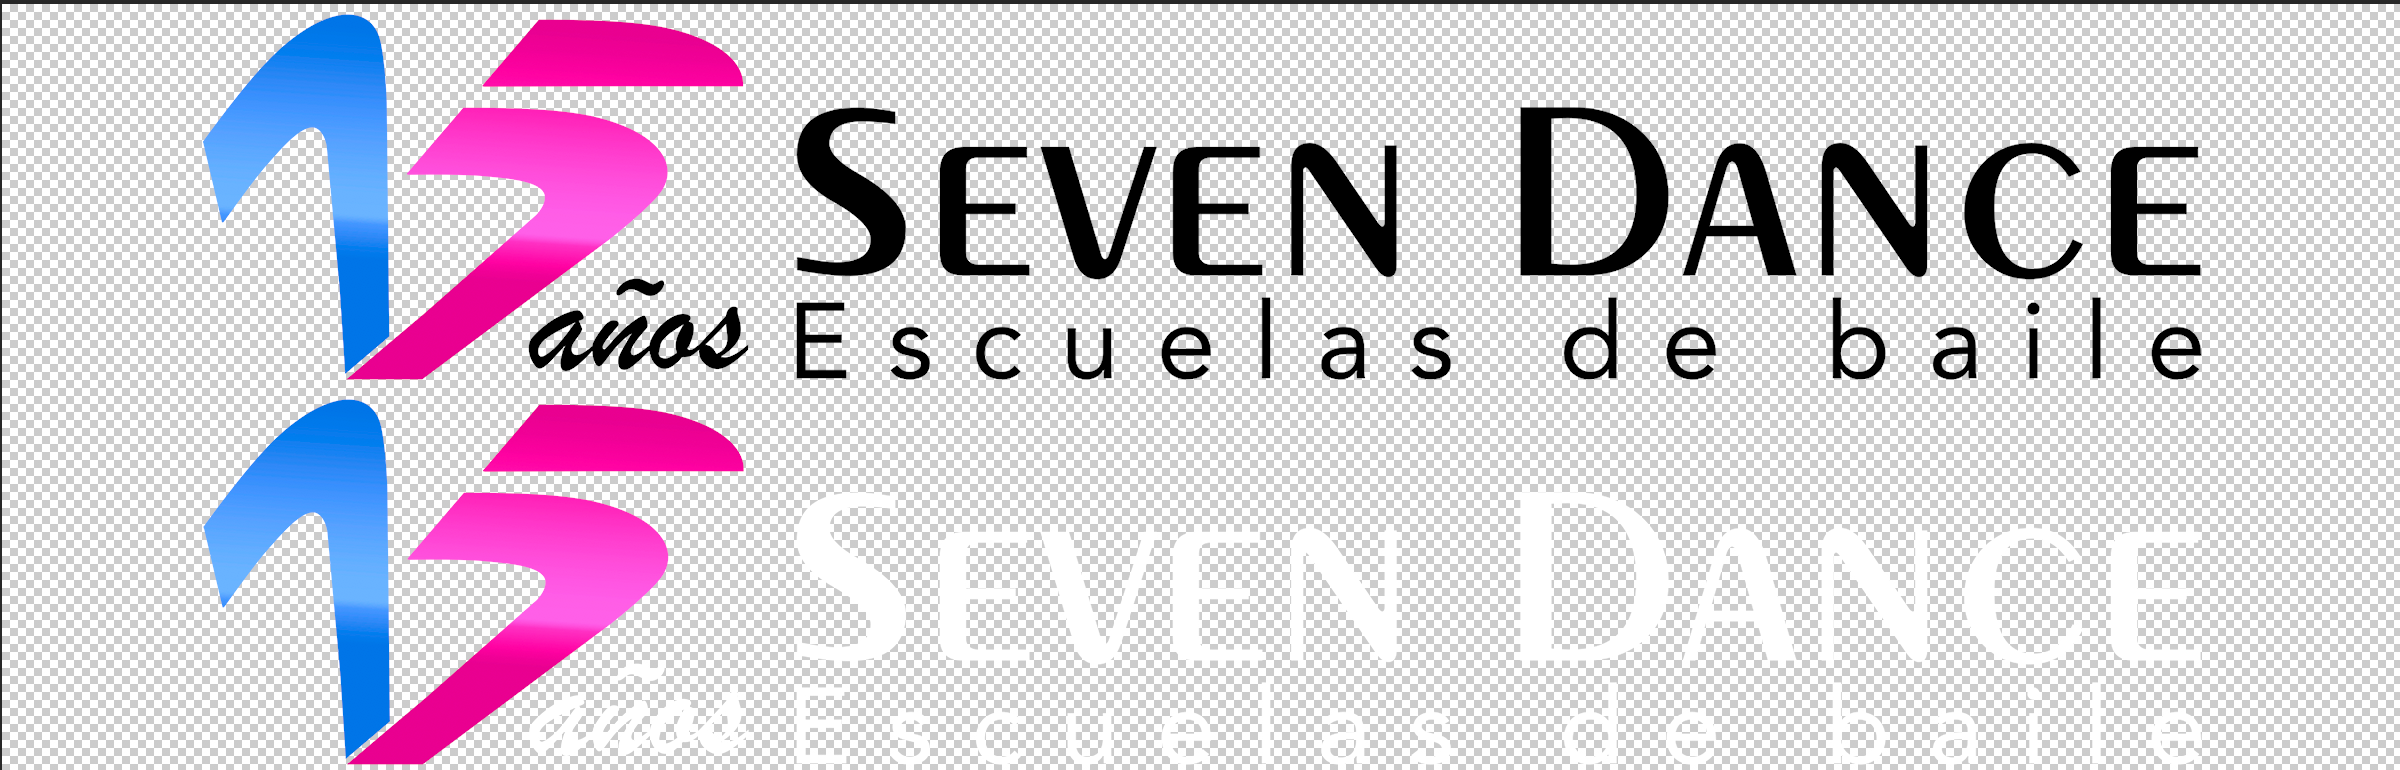 Logo horizontal 15 aniversario Seven Dance escuelas de baile